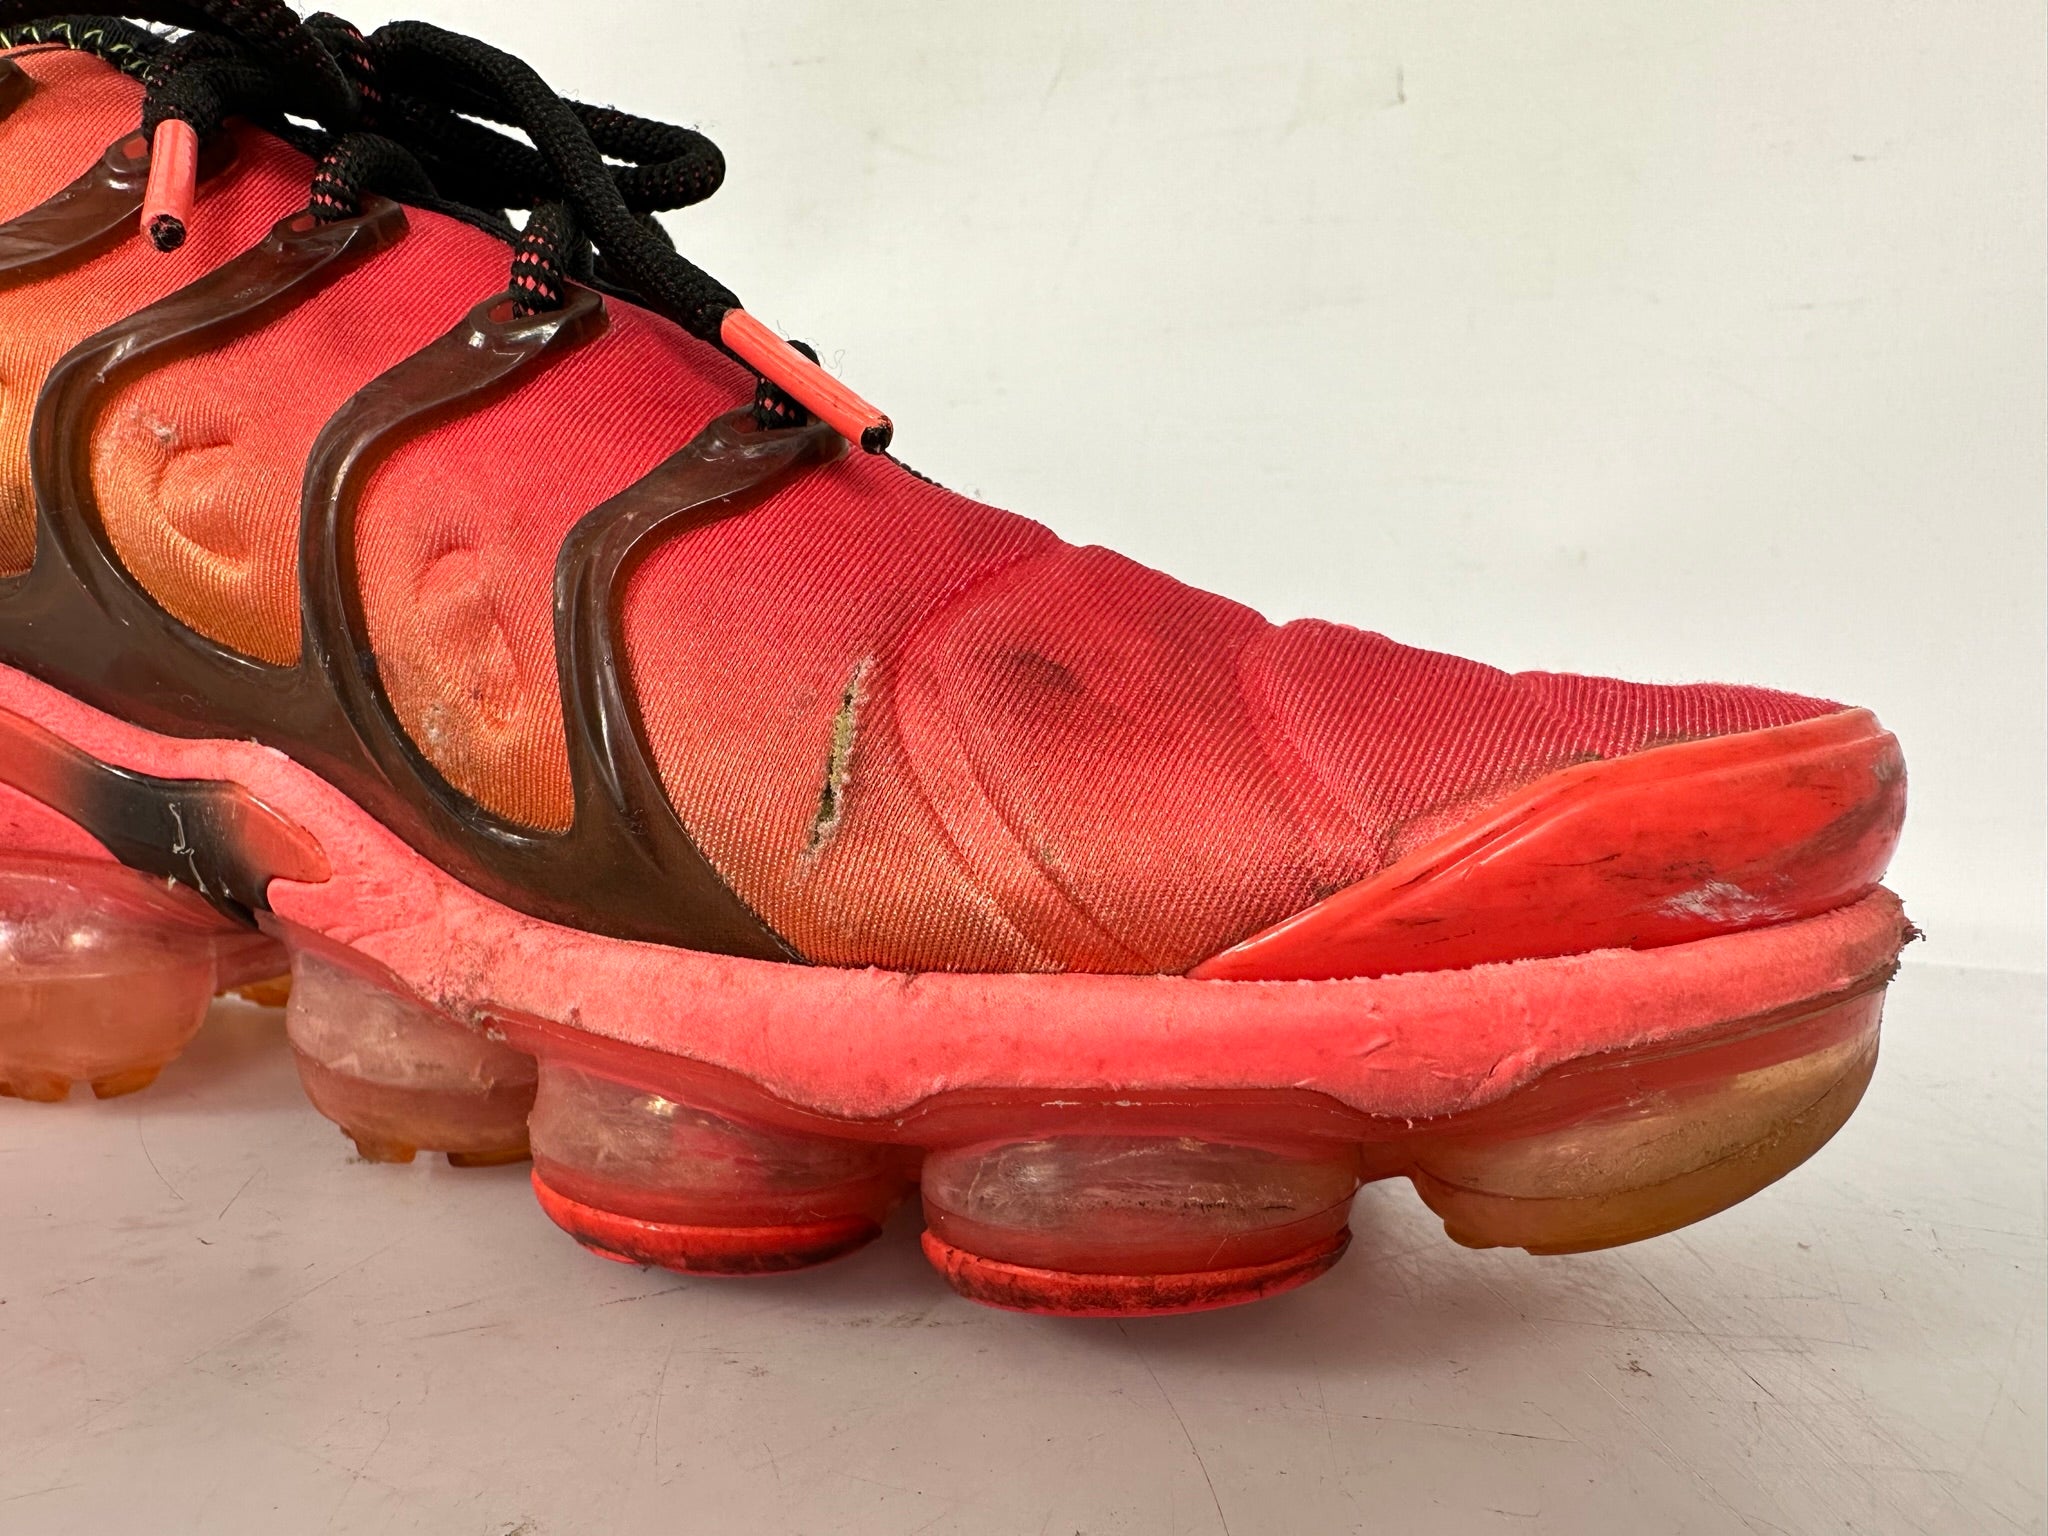 Nike "Laser Crimson" Air VaporMax Plus Shoes Men's Size 10.5 *Used*